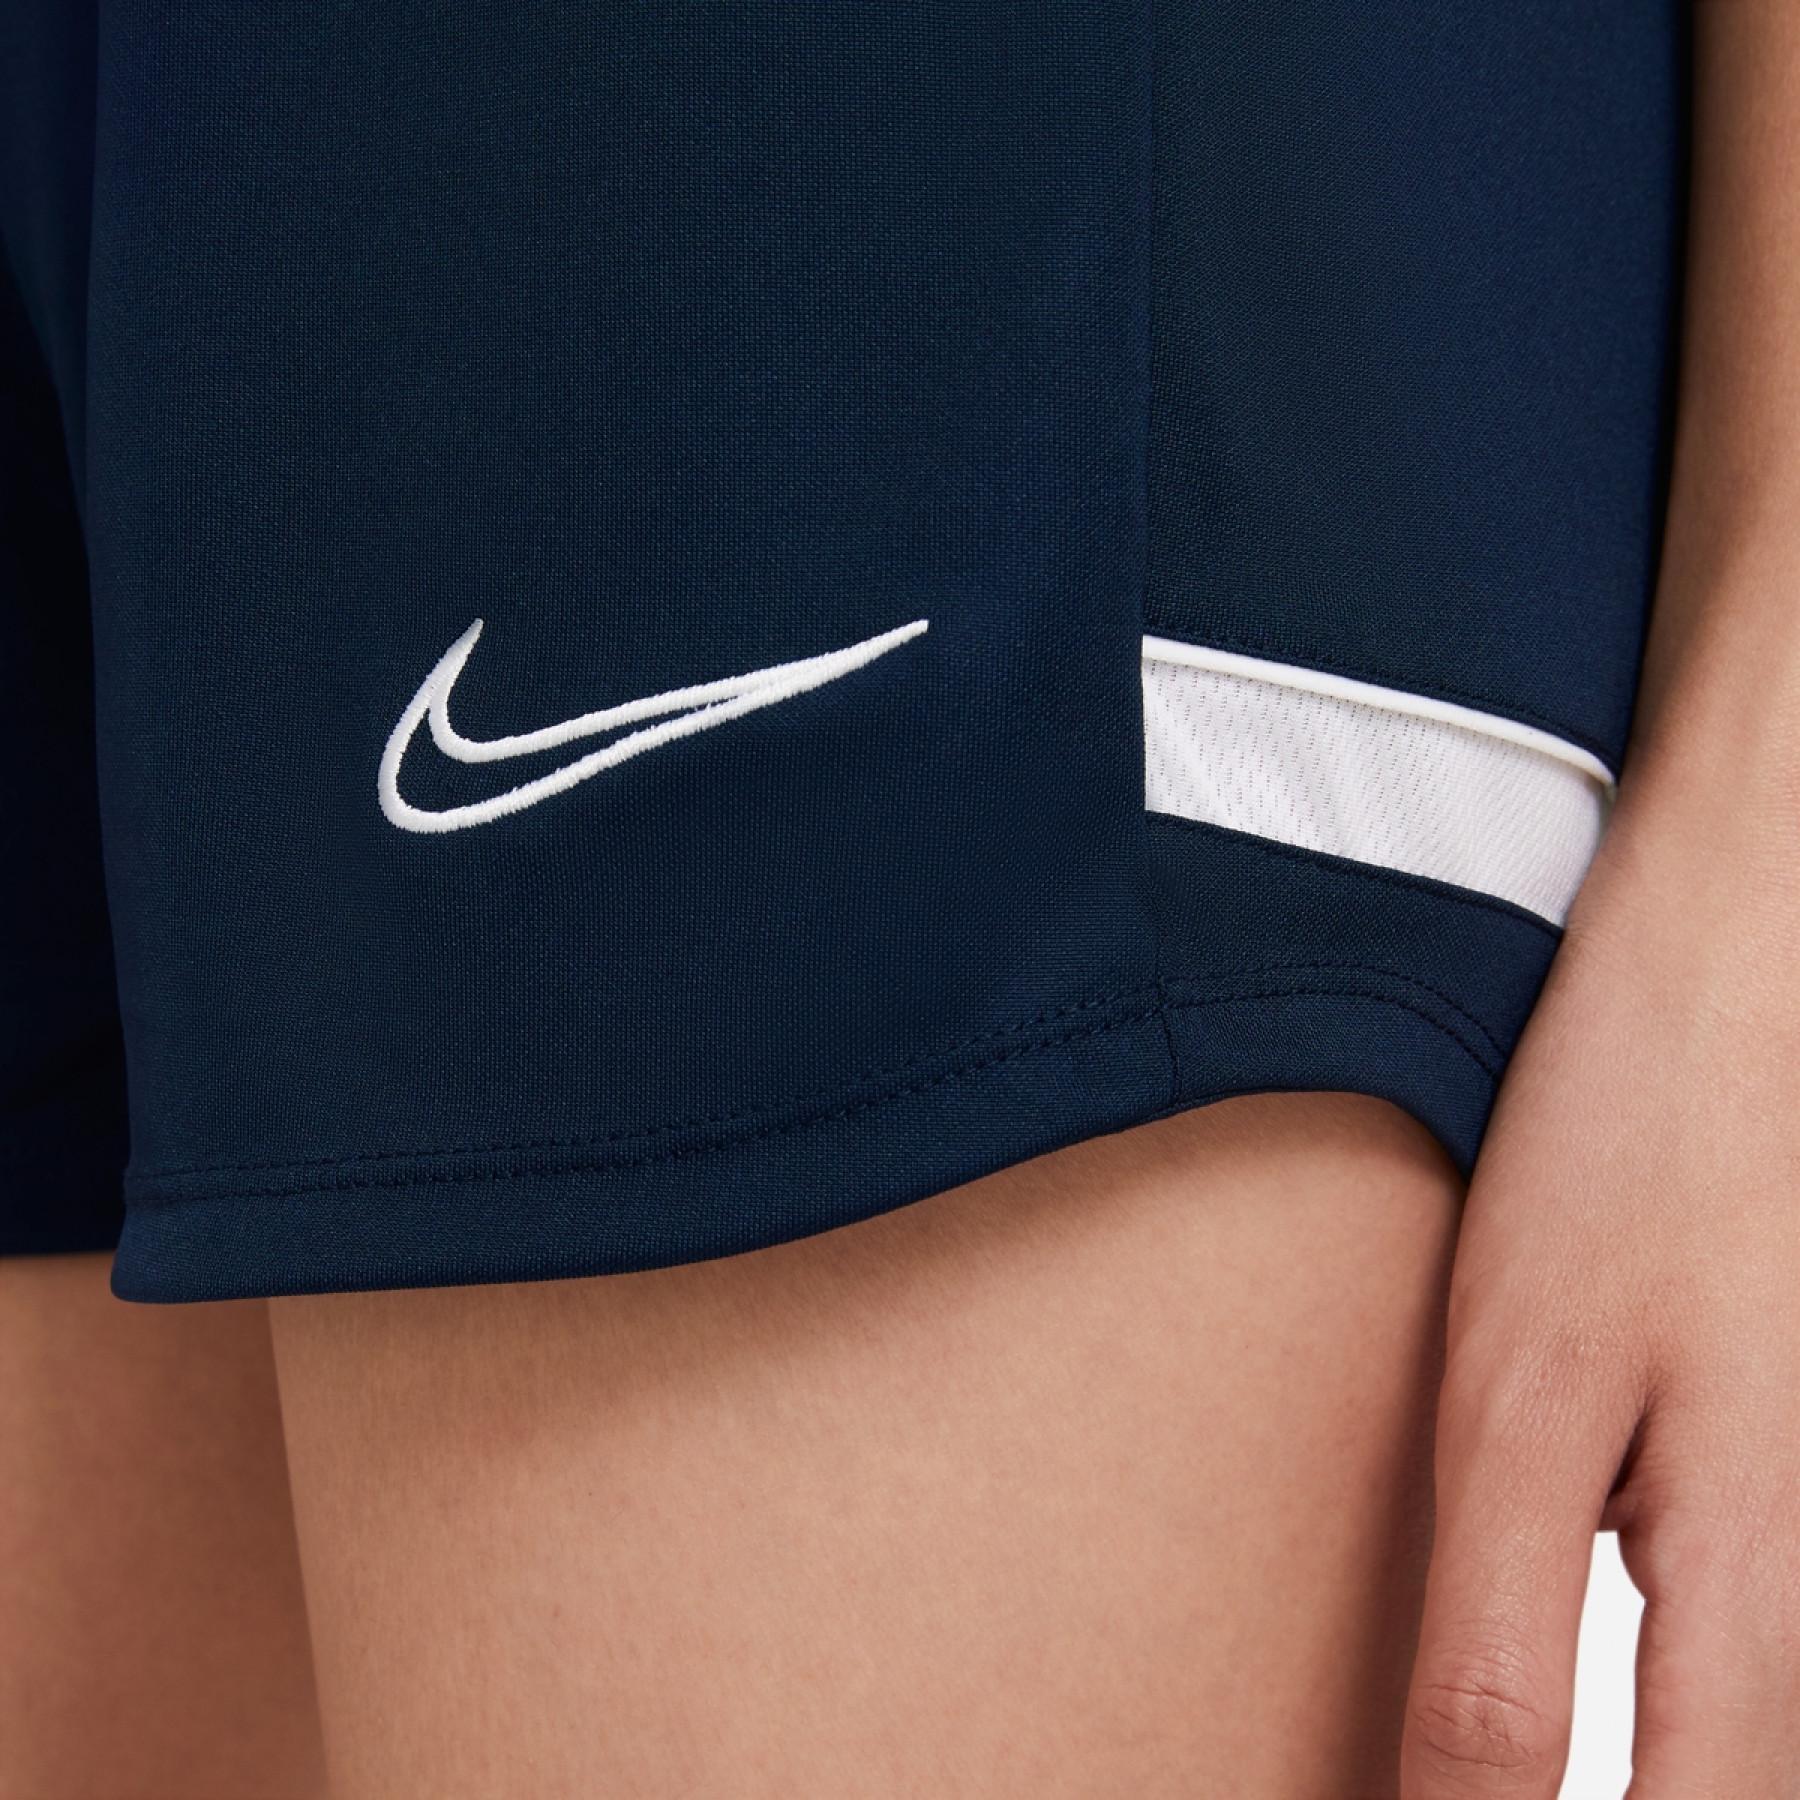 Pantaloncini da donna Nike Dri-FIT Academy